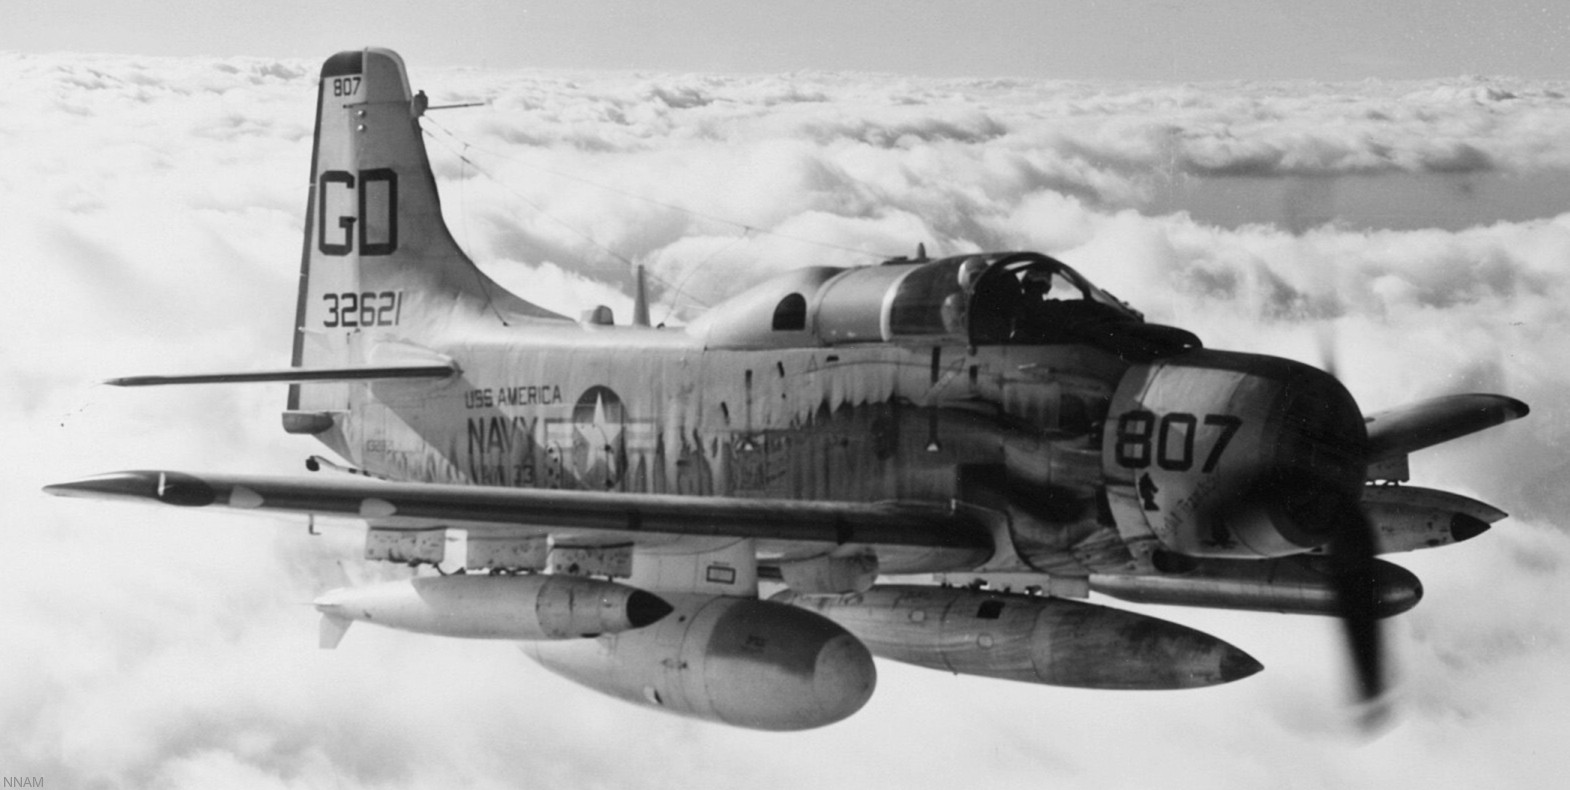 vaw-33 nighthawks carrier airborne early warning squadron caraewron us navy ea-1f skyraider cvw-6 uss america cva-66 10